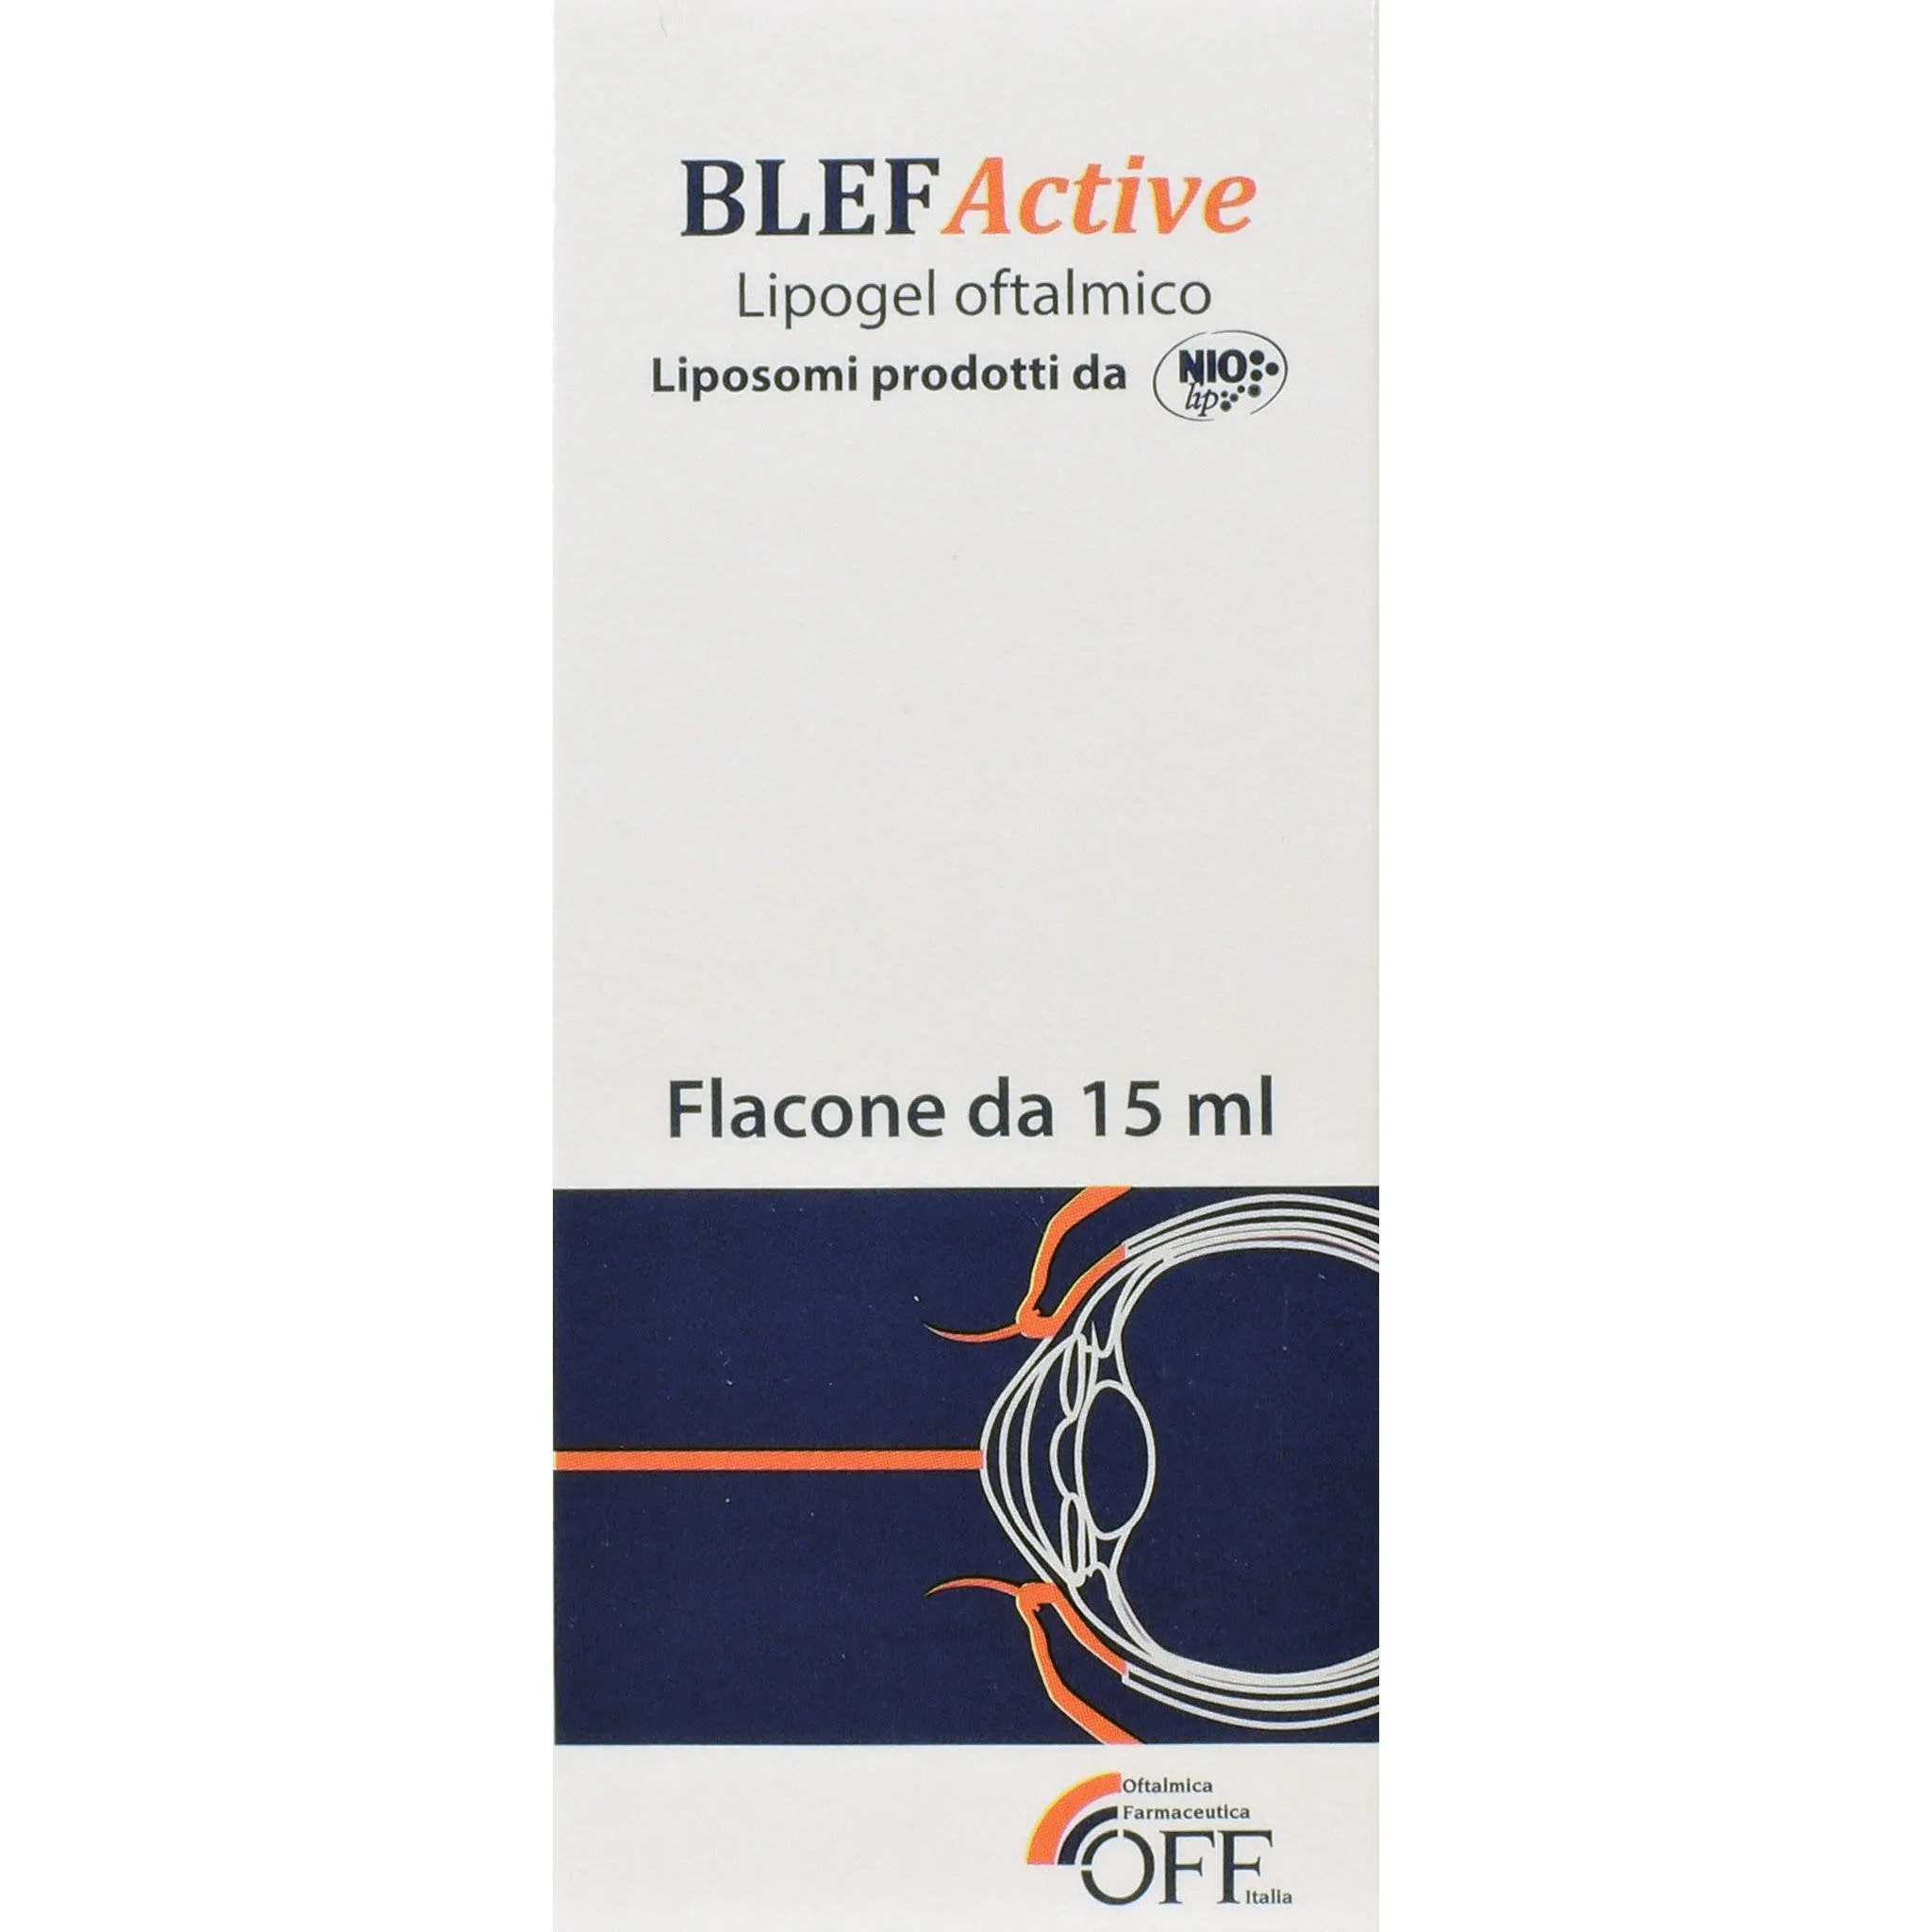 Blefactive Lipogel Oftalmico Azione Lenitiva 15 ml Per Blefariti